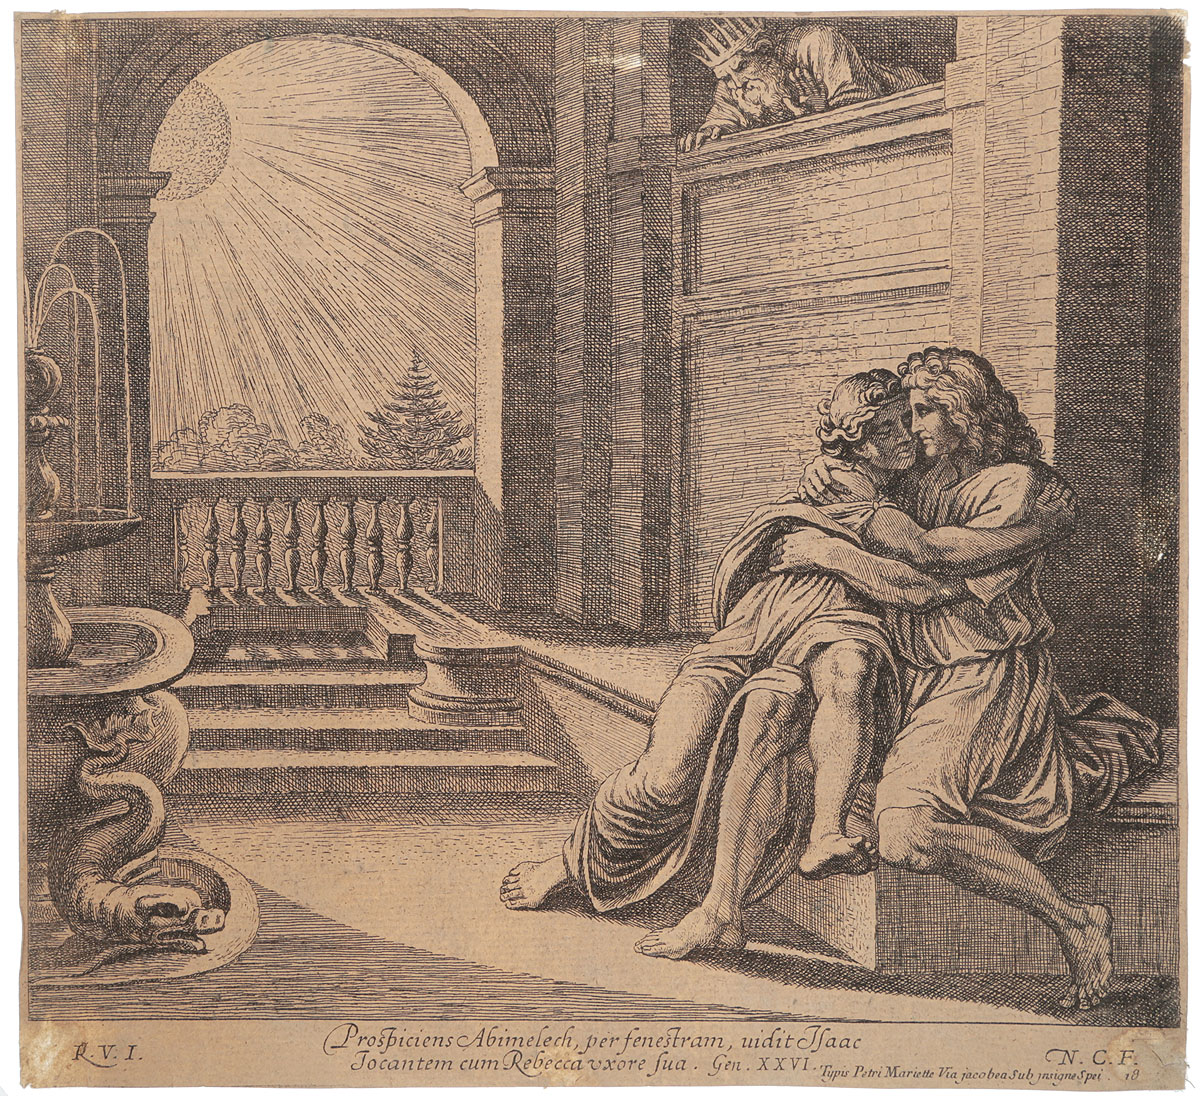 Эпизоды из Священной истории. Исаак и Ревекка. Гравюра. Западная Европа, 1640 год